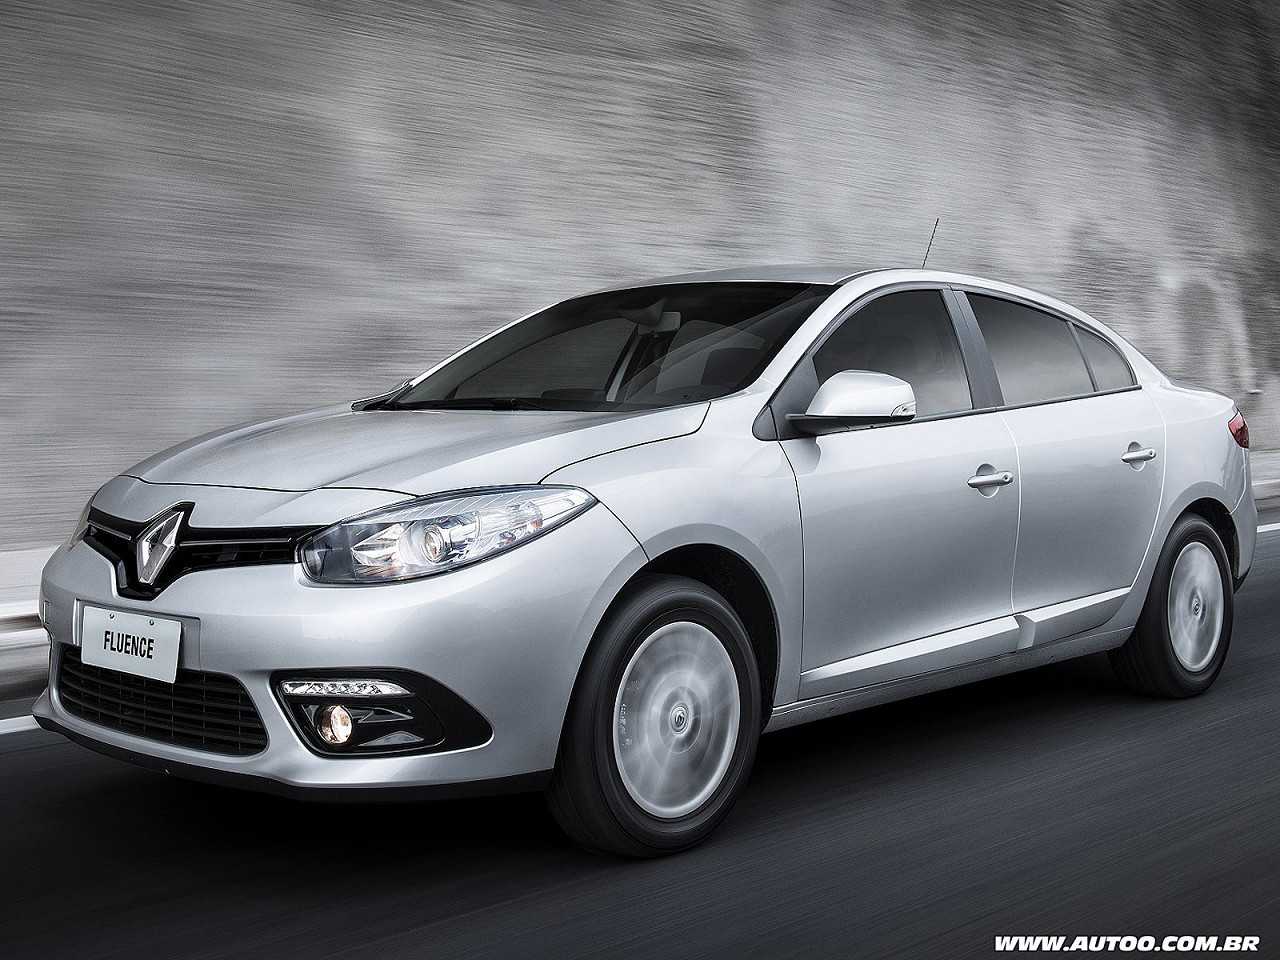 Compra com isenção: Toyota Corolla básico ou Renault Fluence?